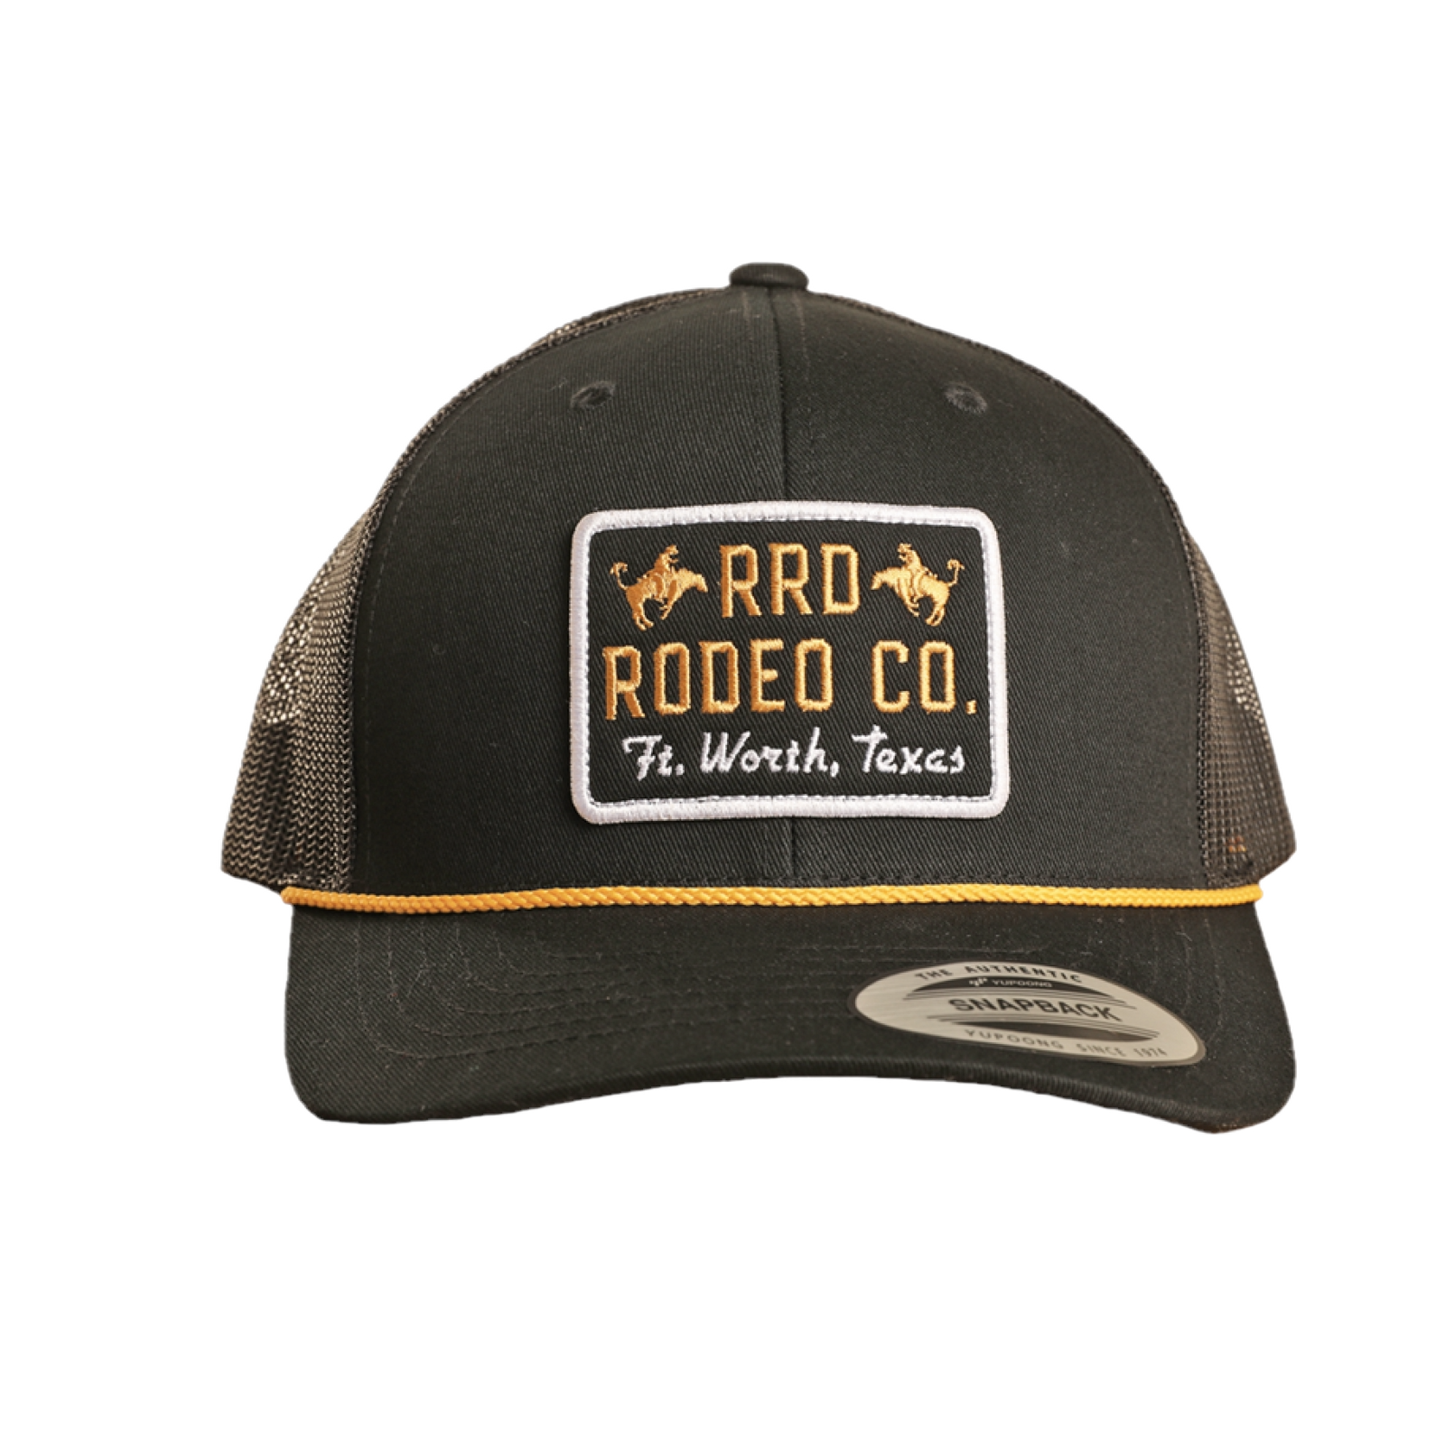 Dale Brisby "RRD Rodeo Co." Black Curved Bill Trucker Cap BU40X02593